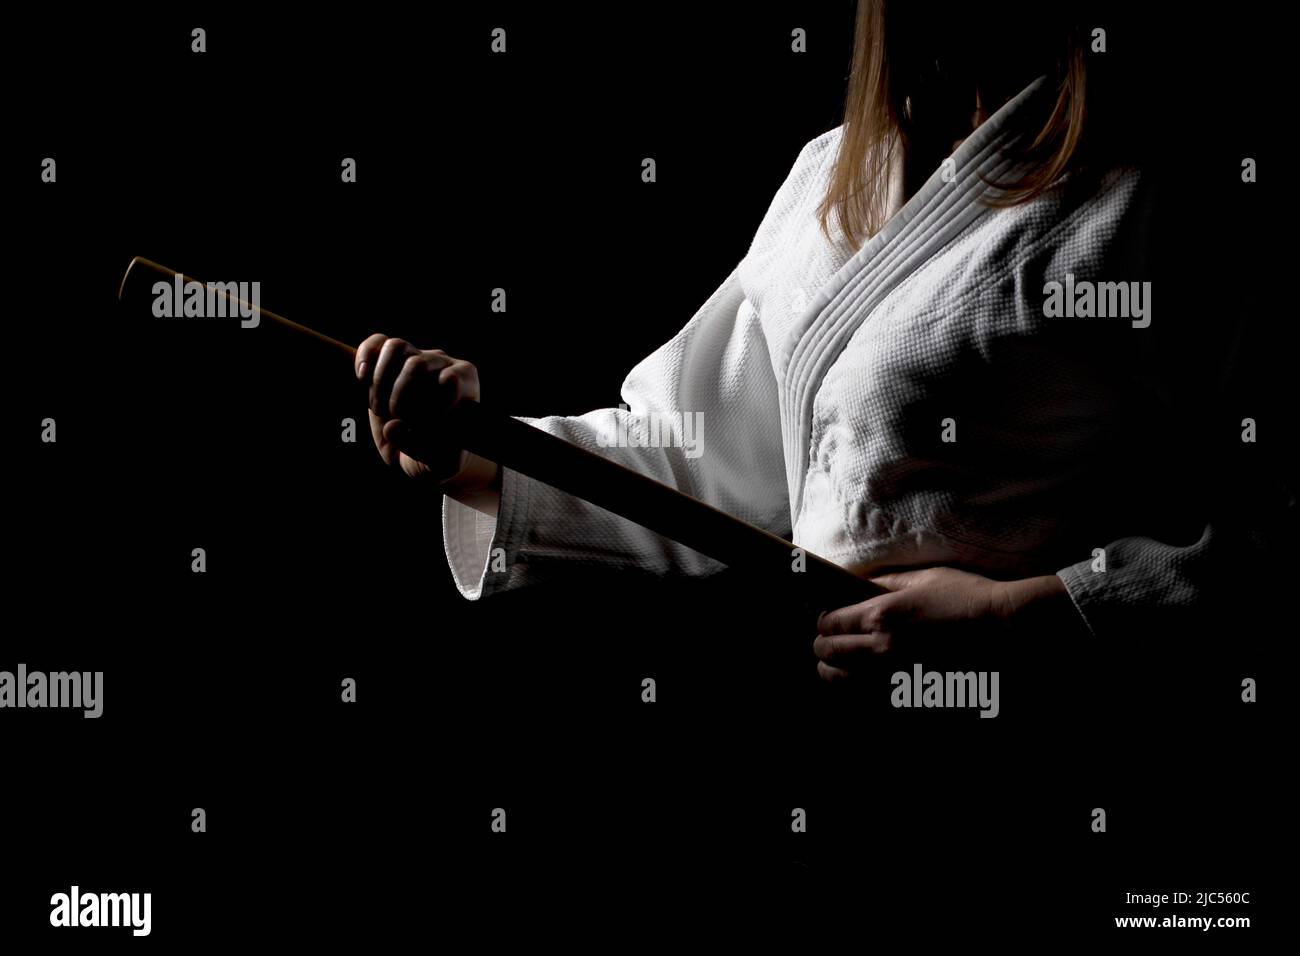 Una ragazza in hakama nero in piedi in posa di combattimento con spada di legno bokken su sfondo scuro. Profondità di campo poco profonda. SDF. Foto Stock